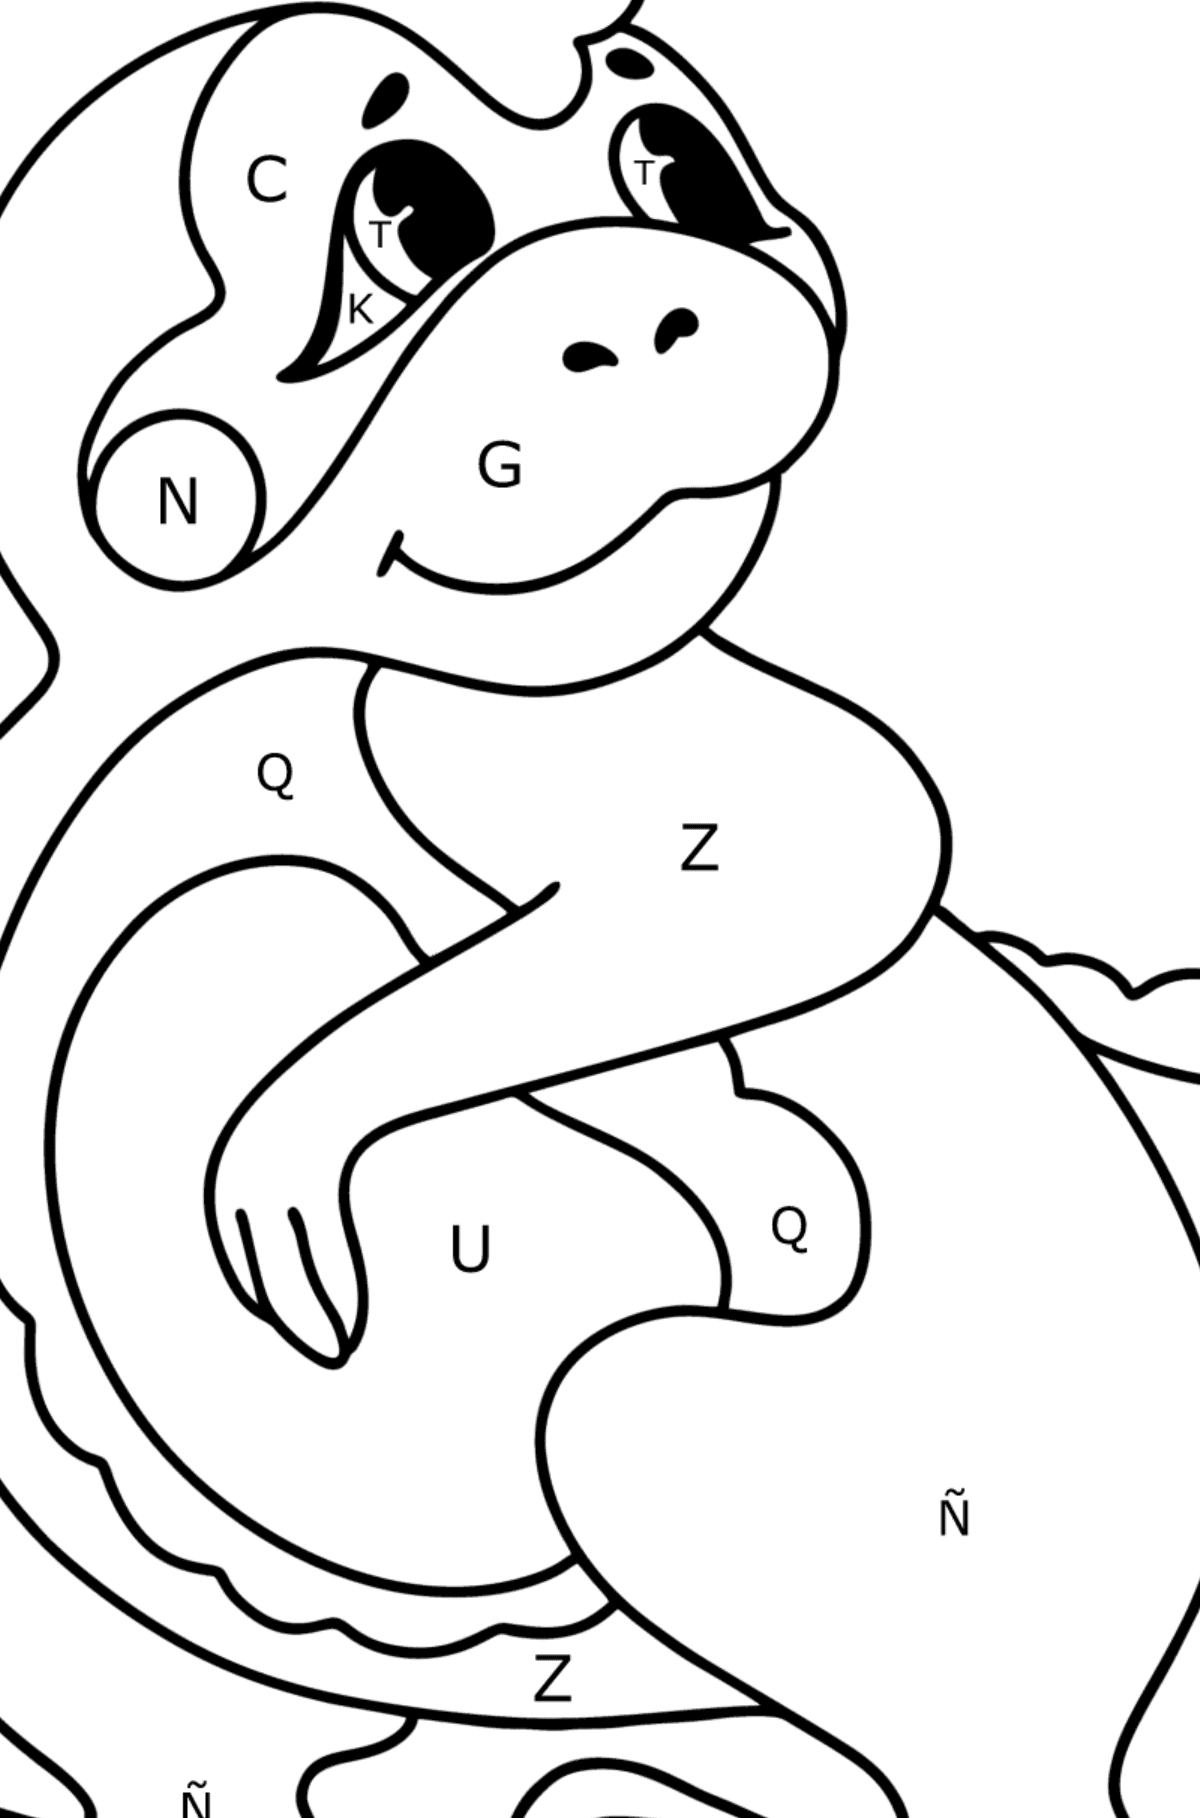 Dibujo de Bebé dragón para colorear - Colorear por Letras para Niños